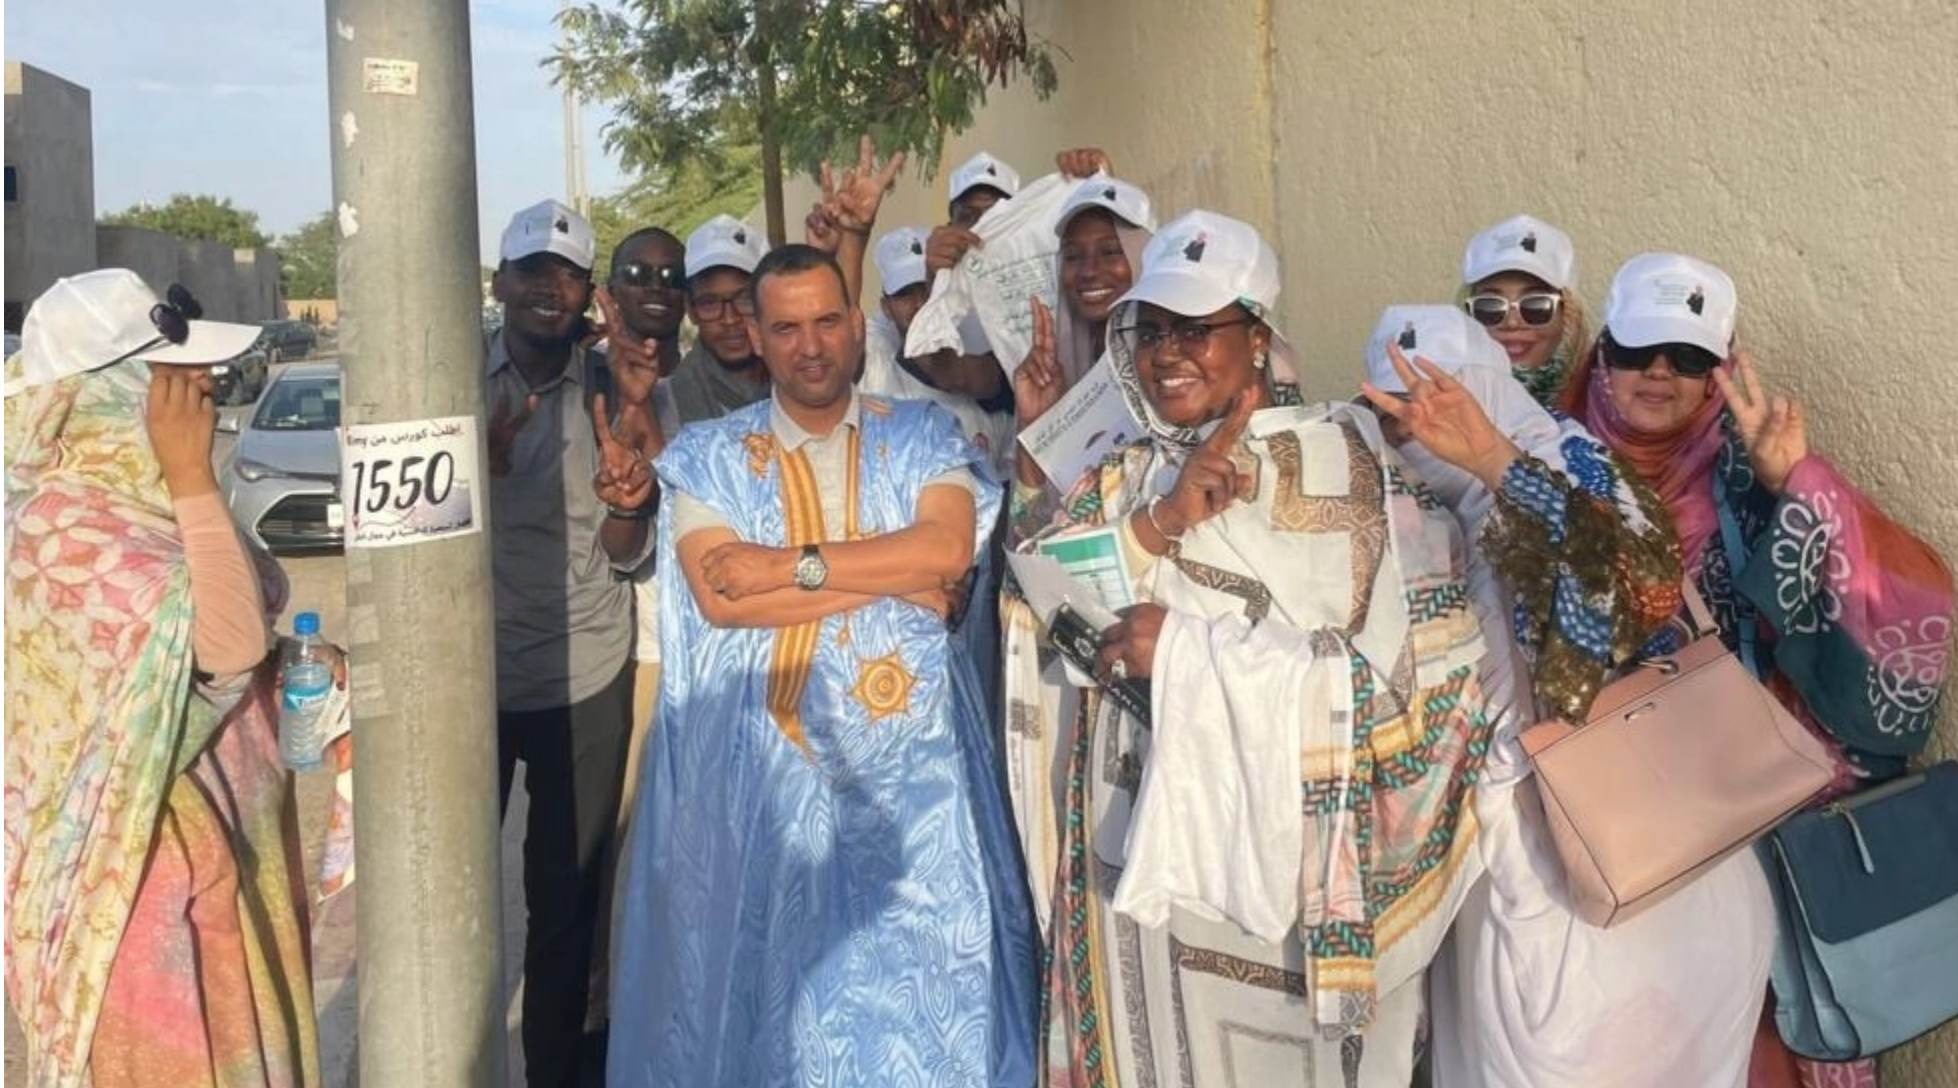 Élections en Mauritanie: comment des candidats de moins de 35 ans veulent mieux représenter les jeunes